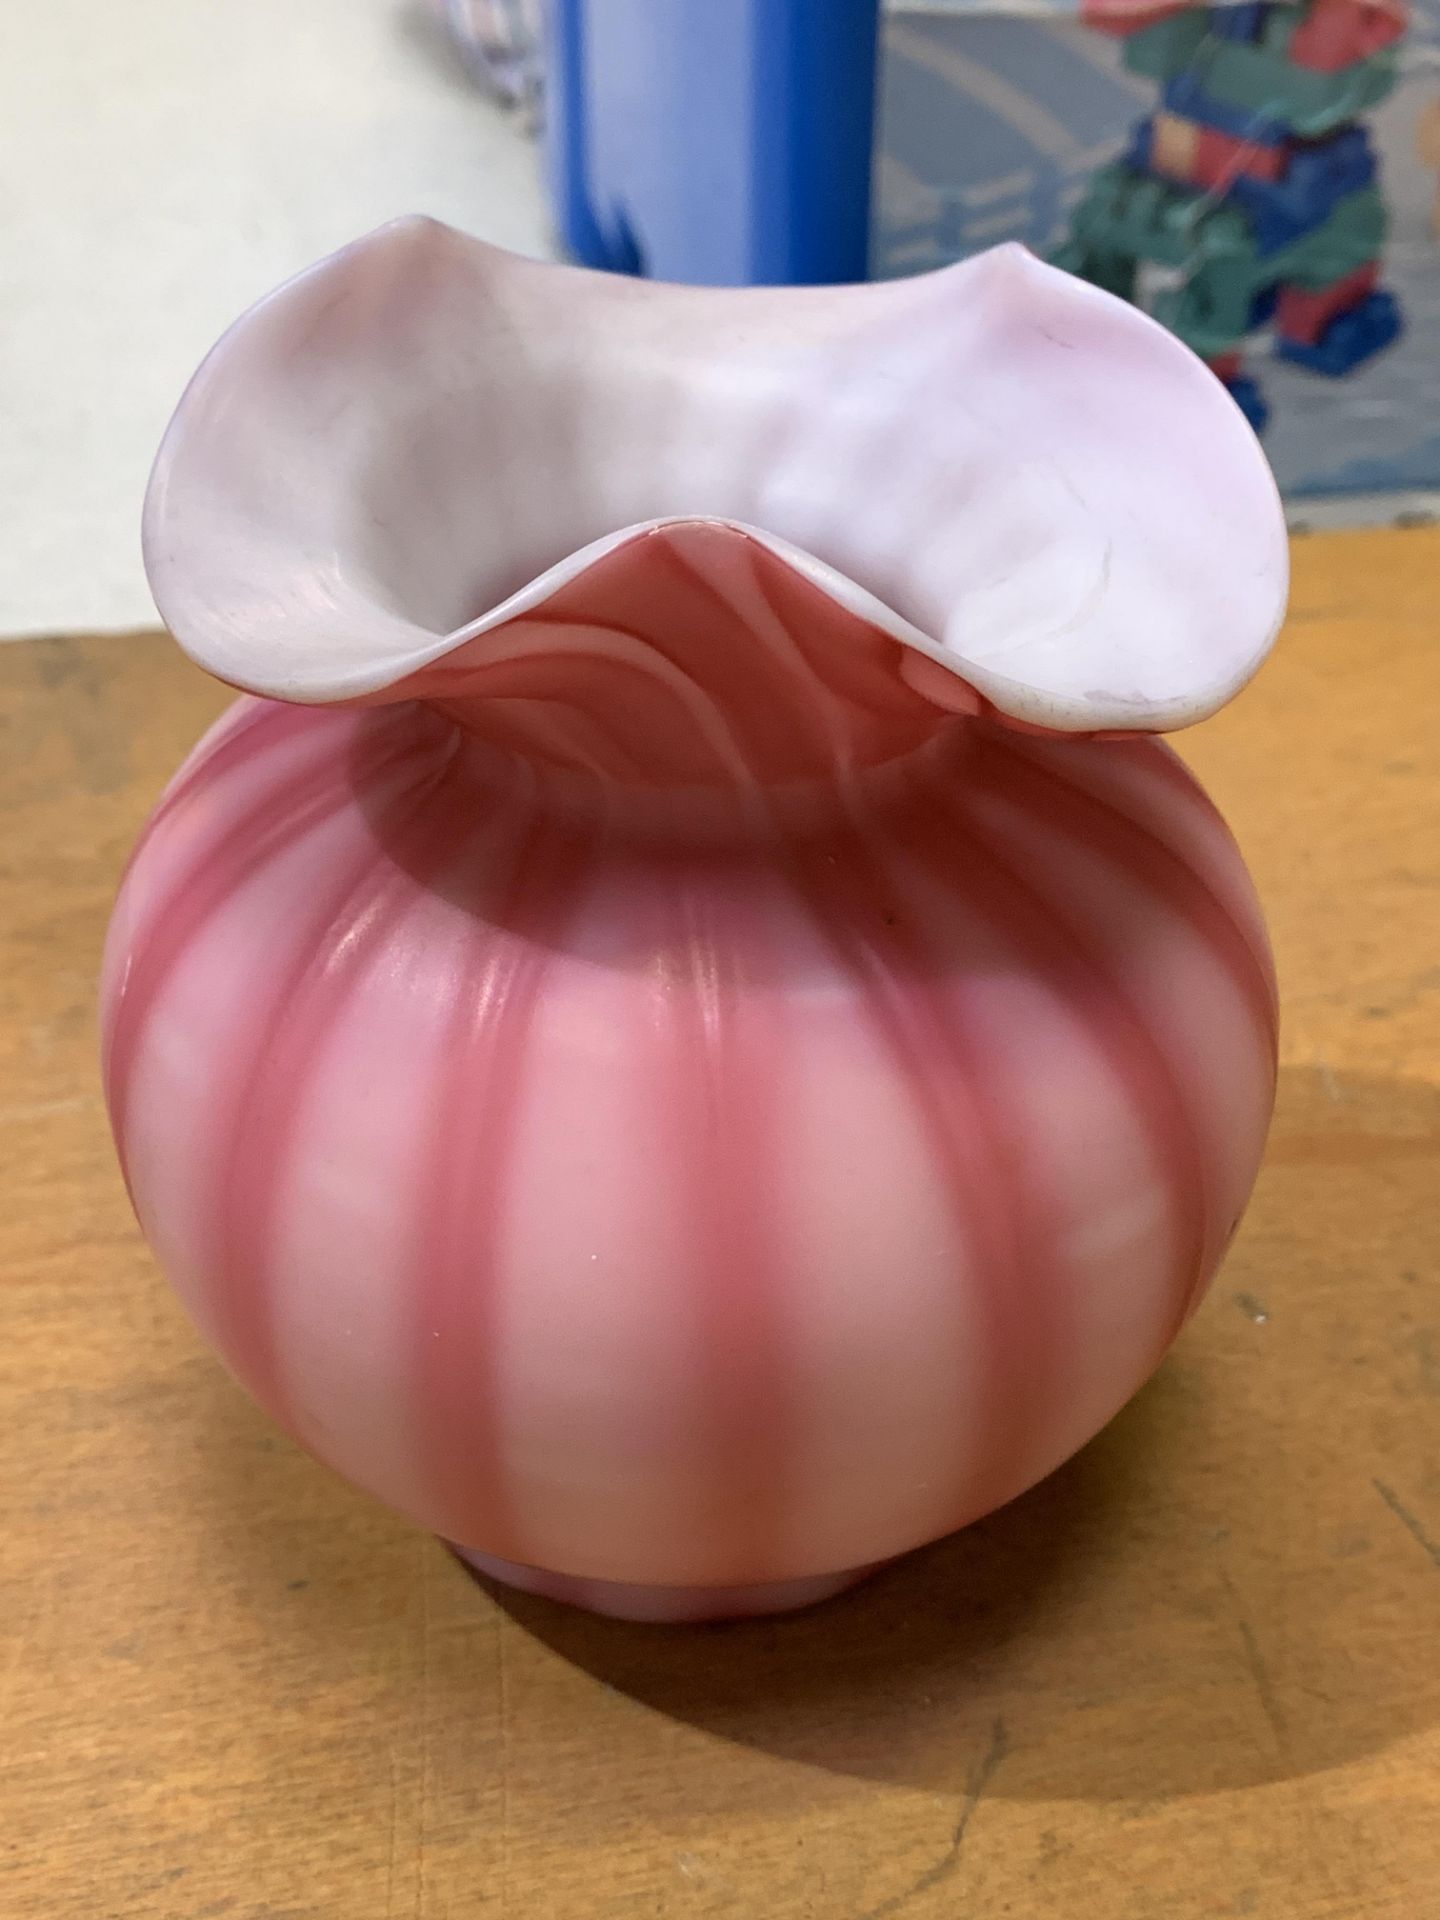 A Victorian pink striped vaseline glass vase - Image 2 of 2